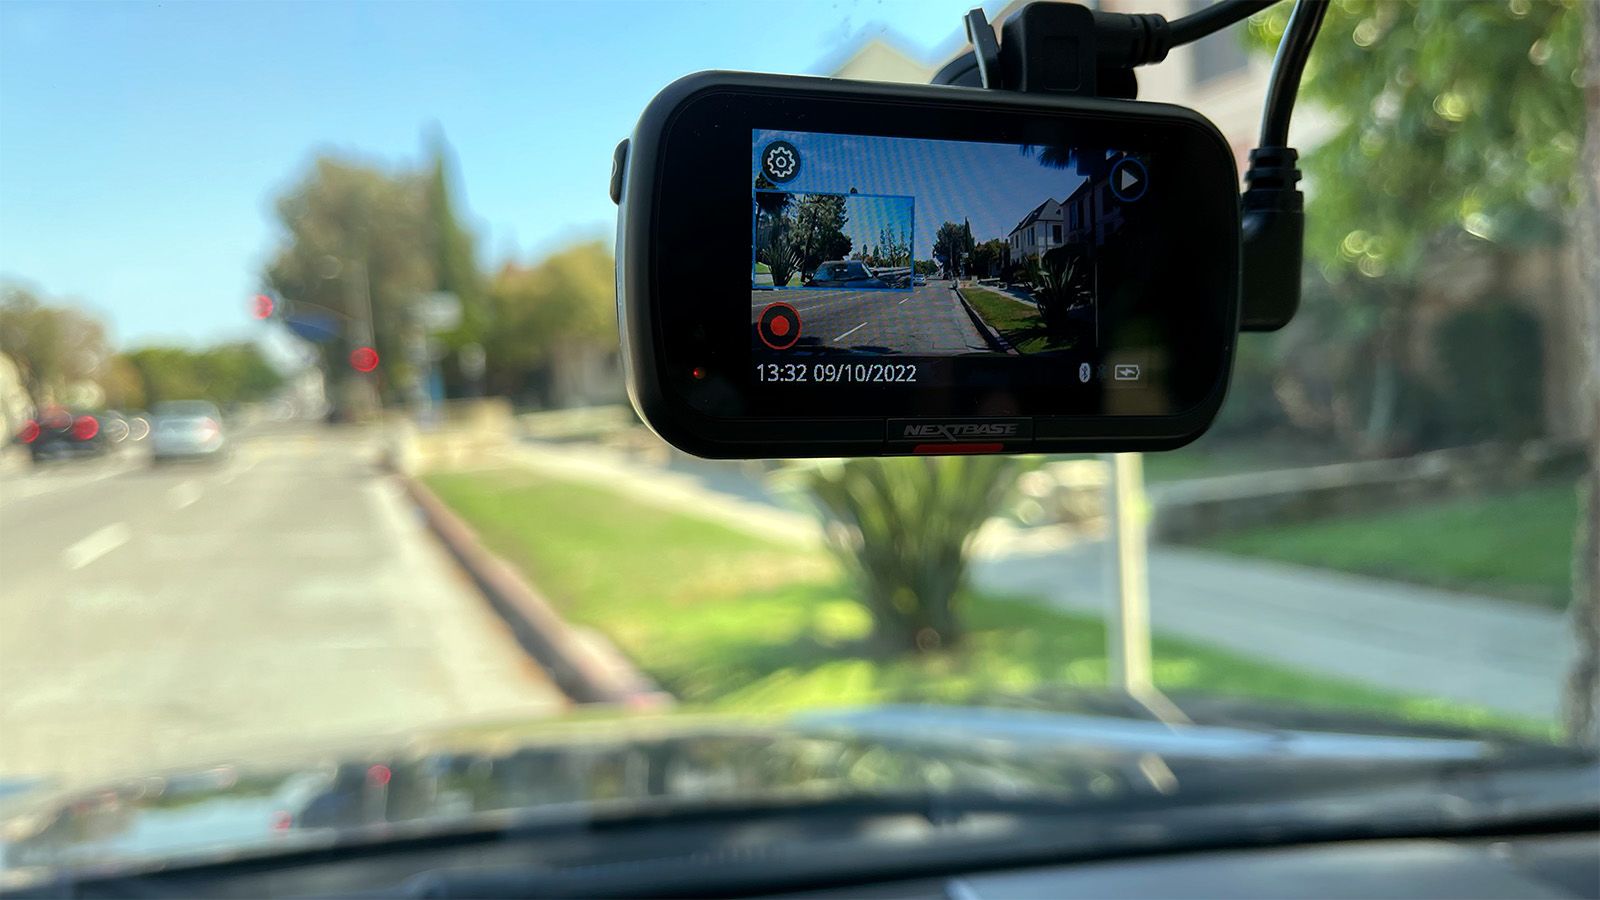 Garmin Dash Cam Mini 2 Compact In-Vehicle Recording Device 010